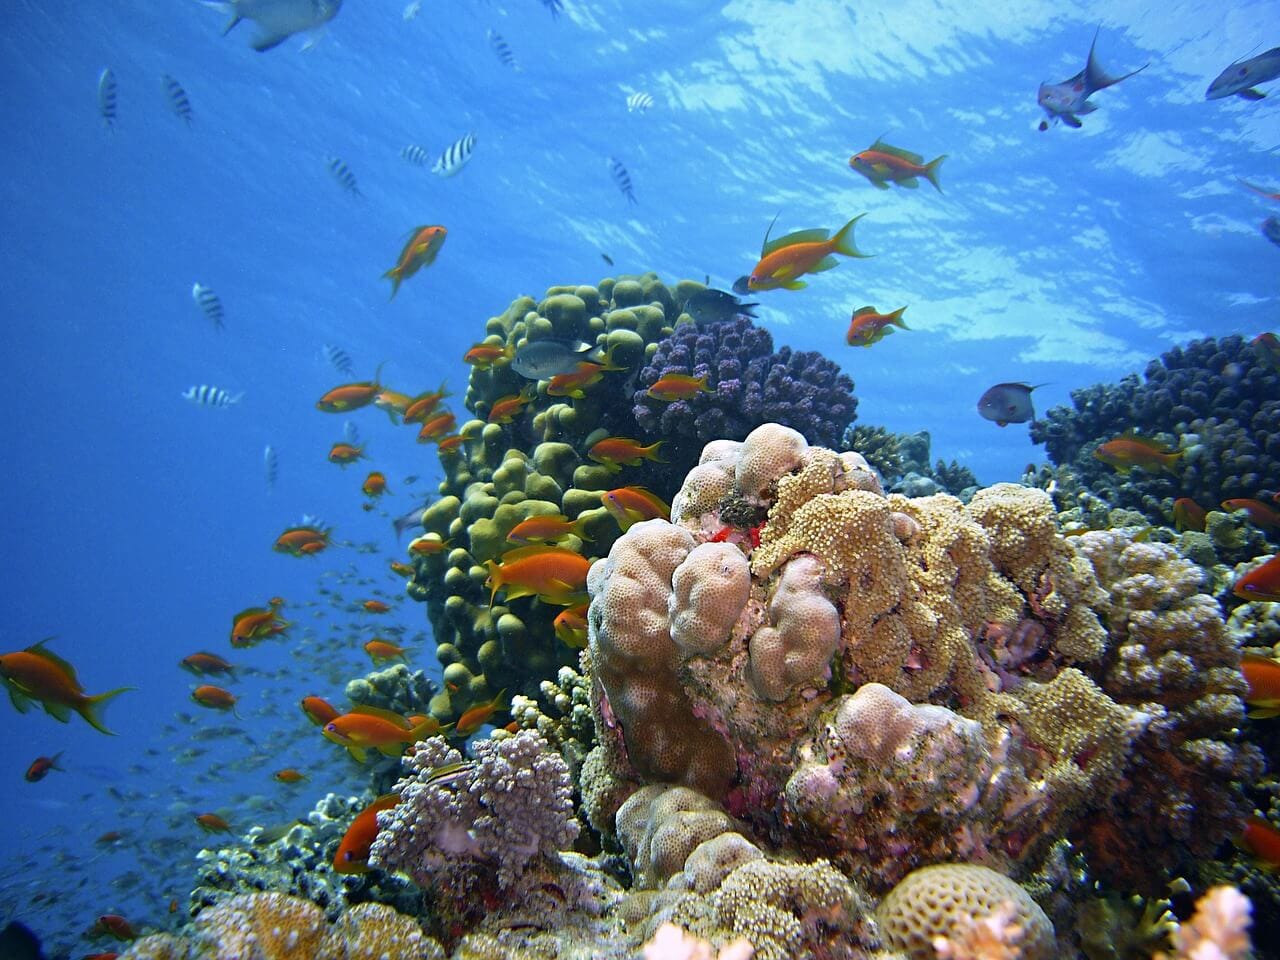 https://pixabay.com/photos/underwater-reef-diving-1656618/